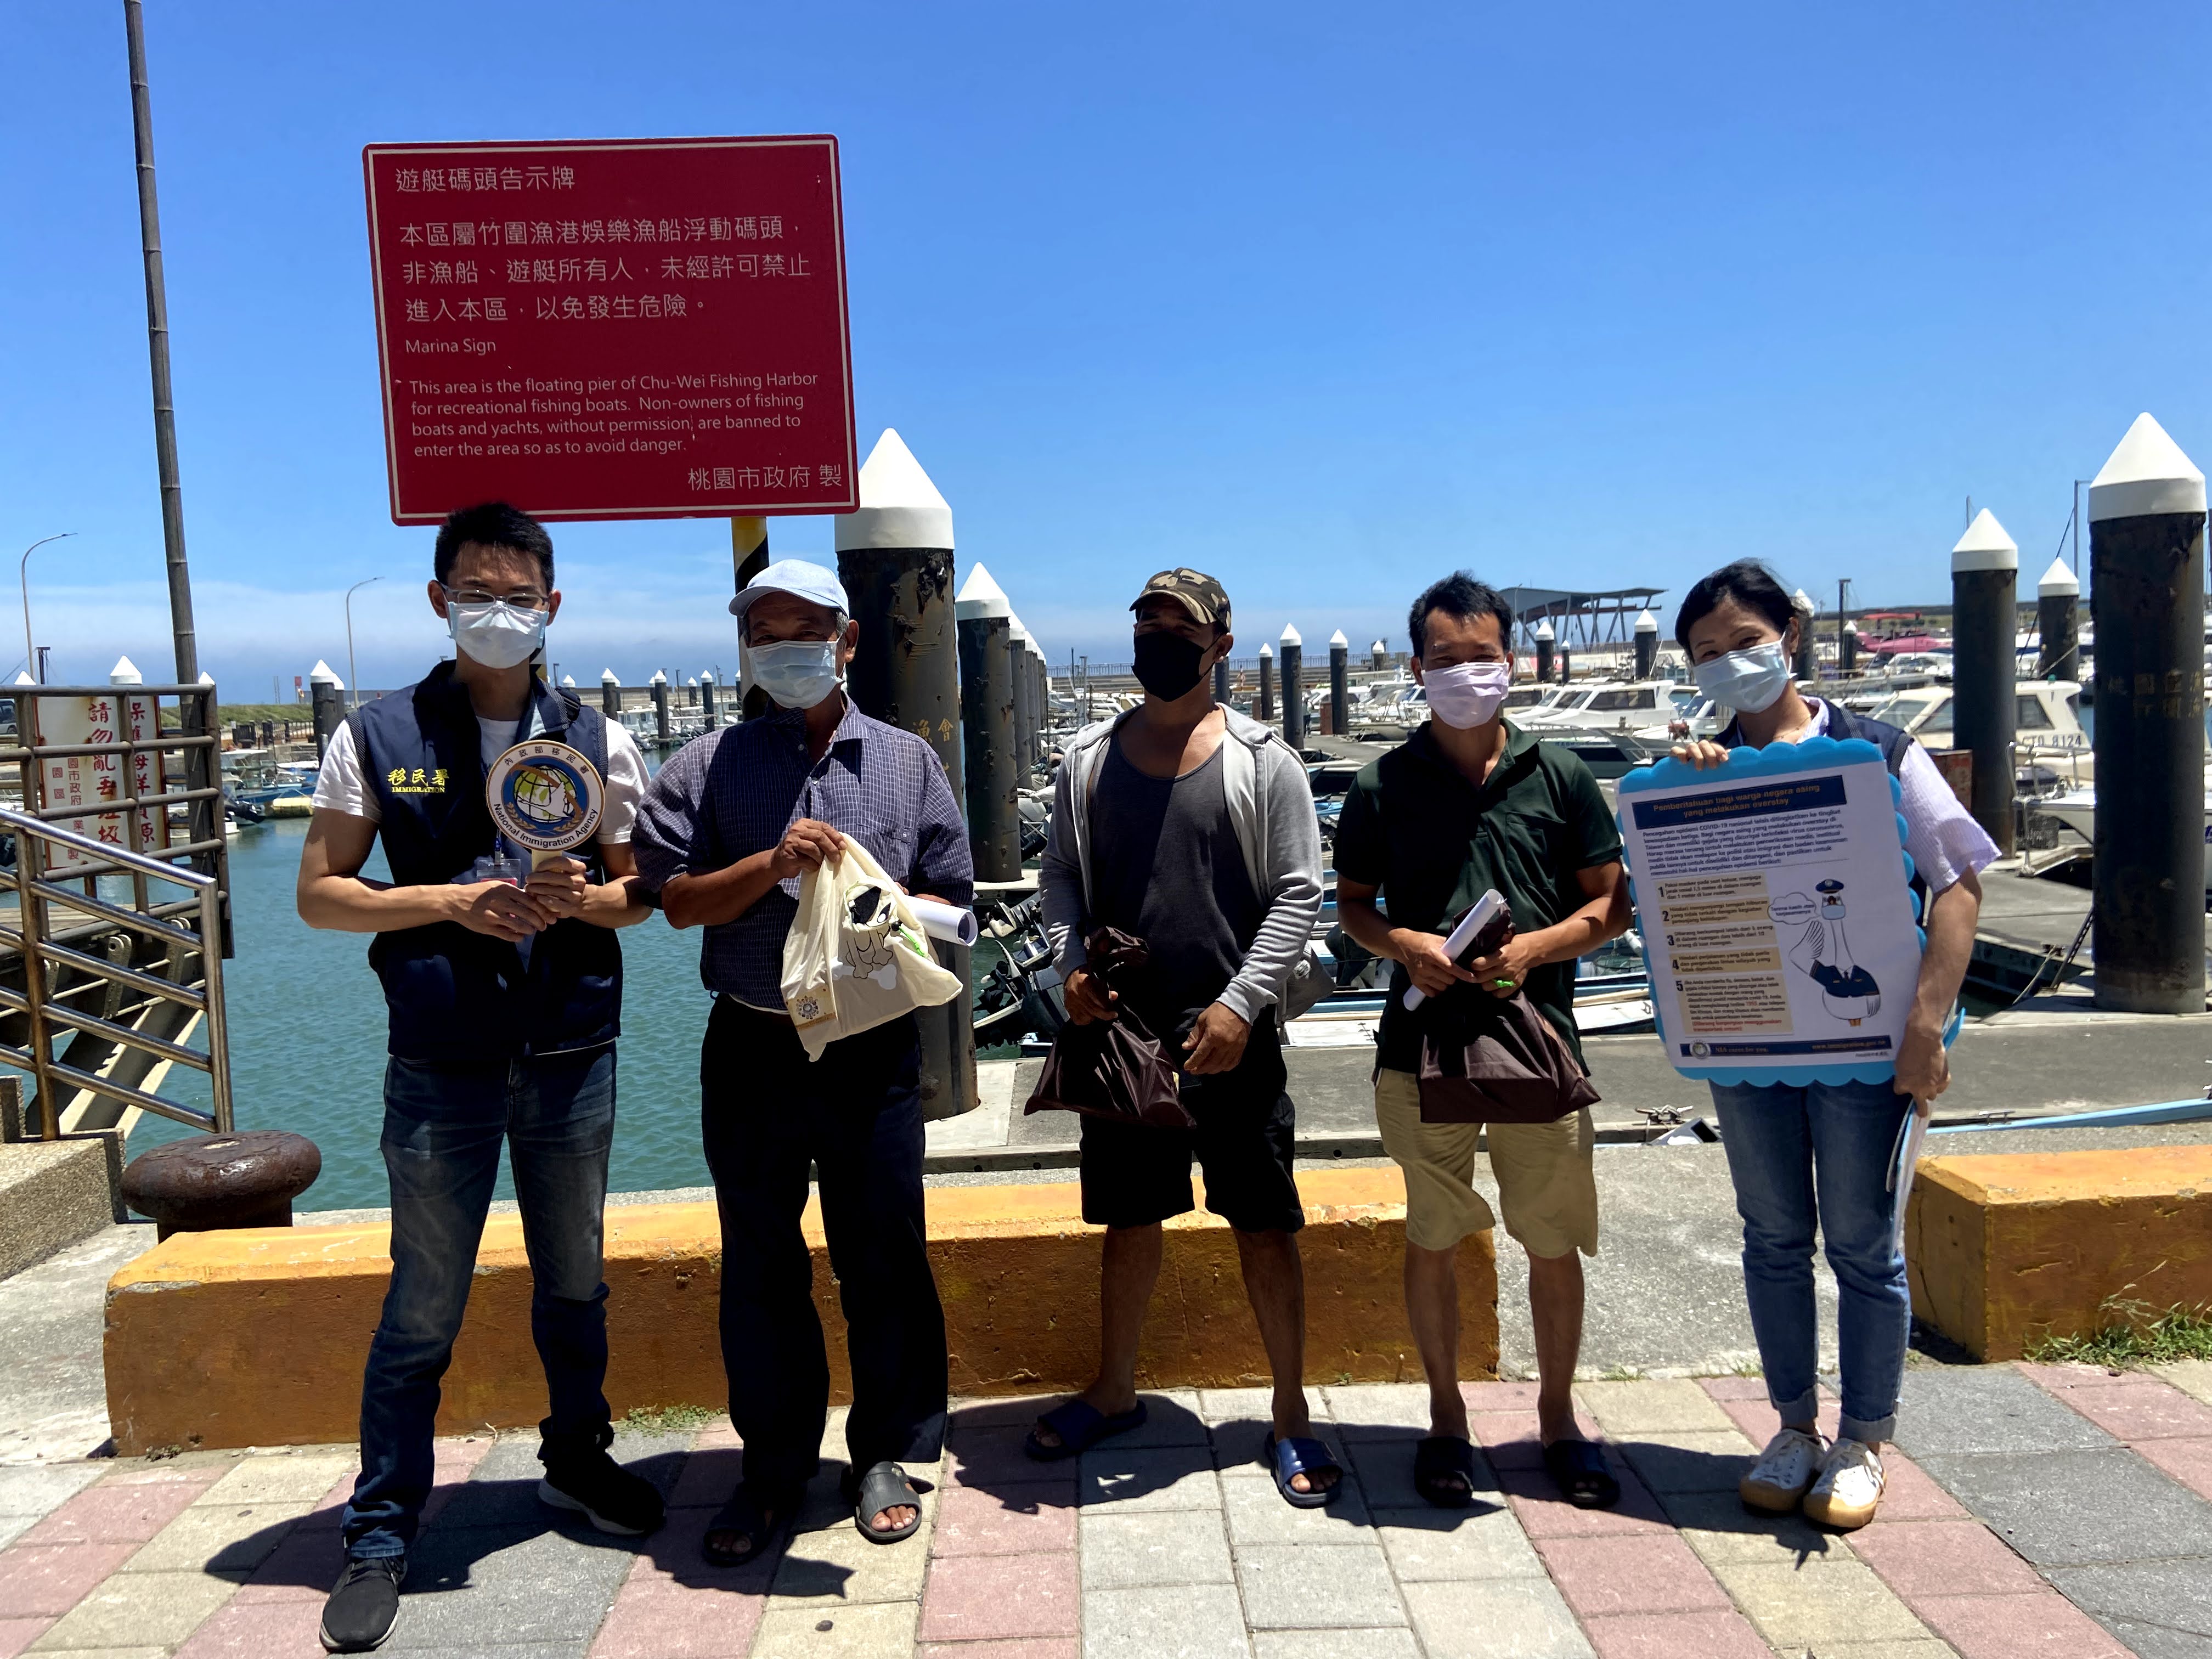 Lindungi Kesehatan Para Nelayan! Stasiun Layanan Kota Taoyuan dari Departemen Imigrasi Mempromosikan Pencegahan Pandemi Kepada Para Nelayan. Sumber: Stasiun Layanan Kota Taoyuan